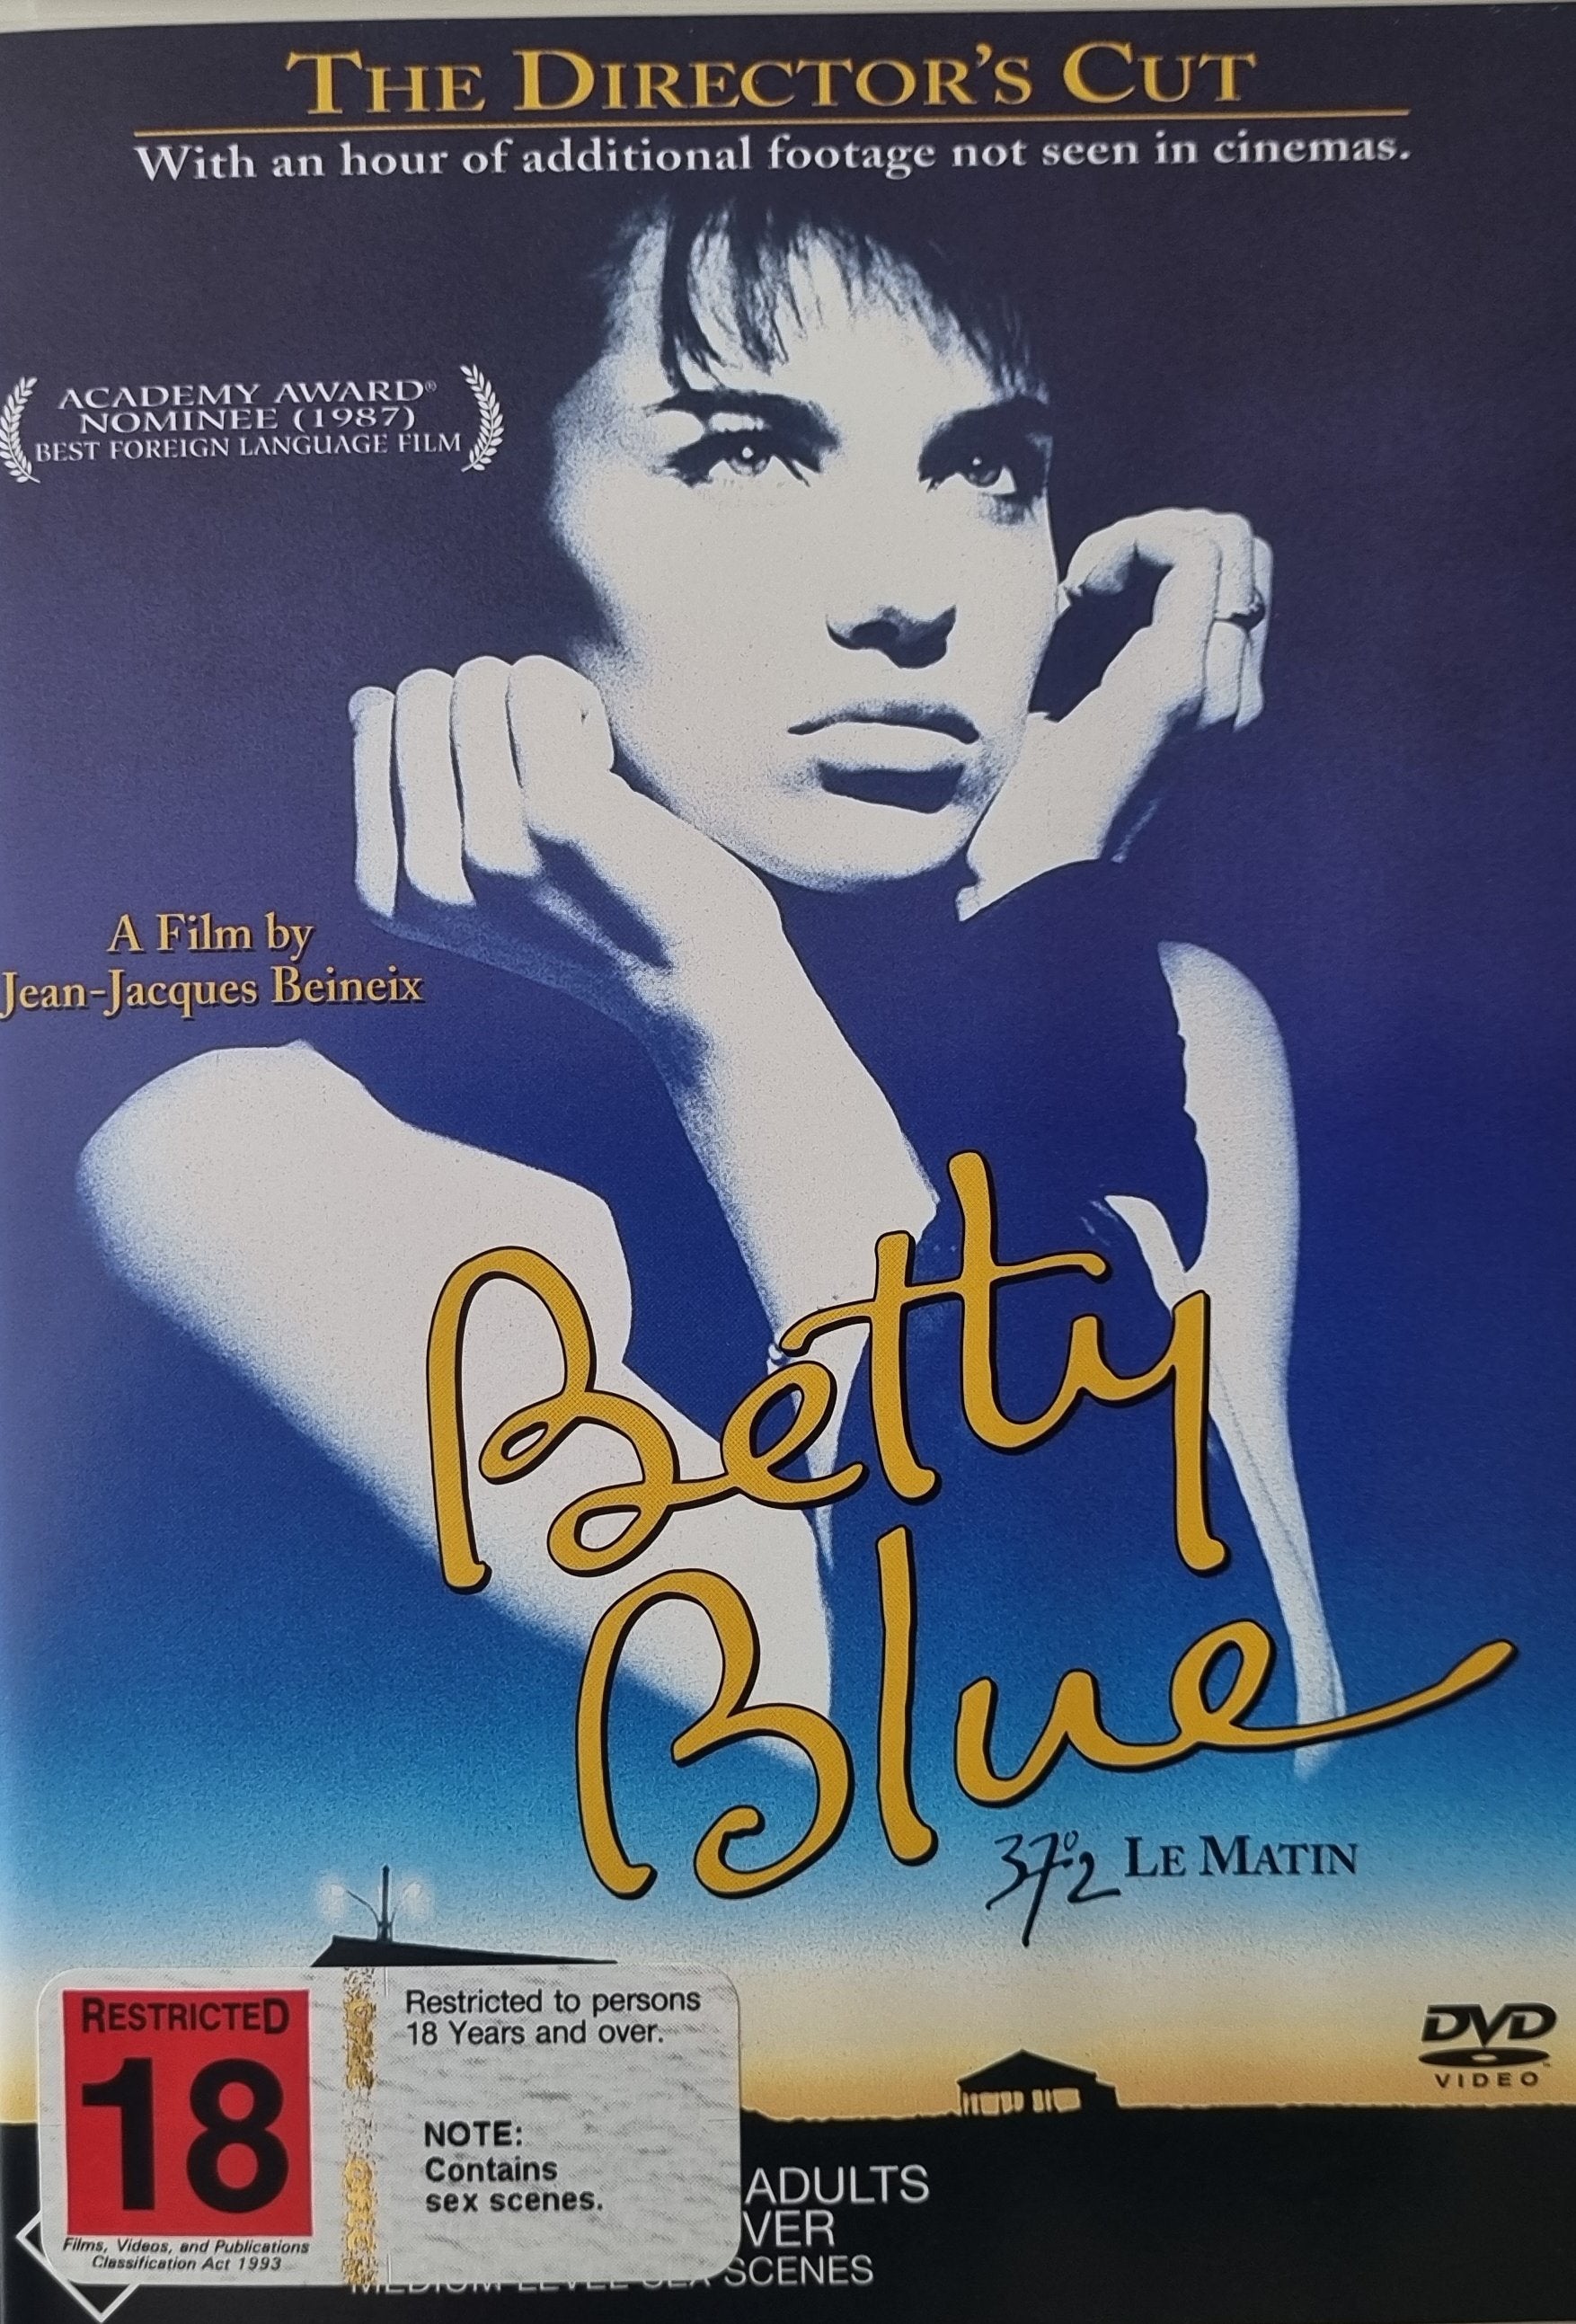 Betty Blue Director's Cut (DVD)